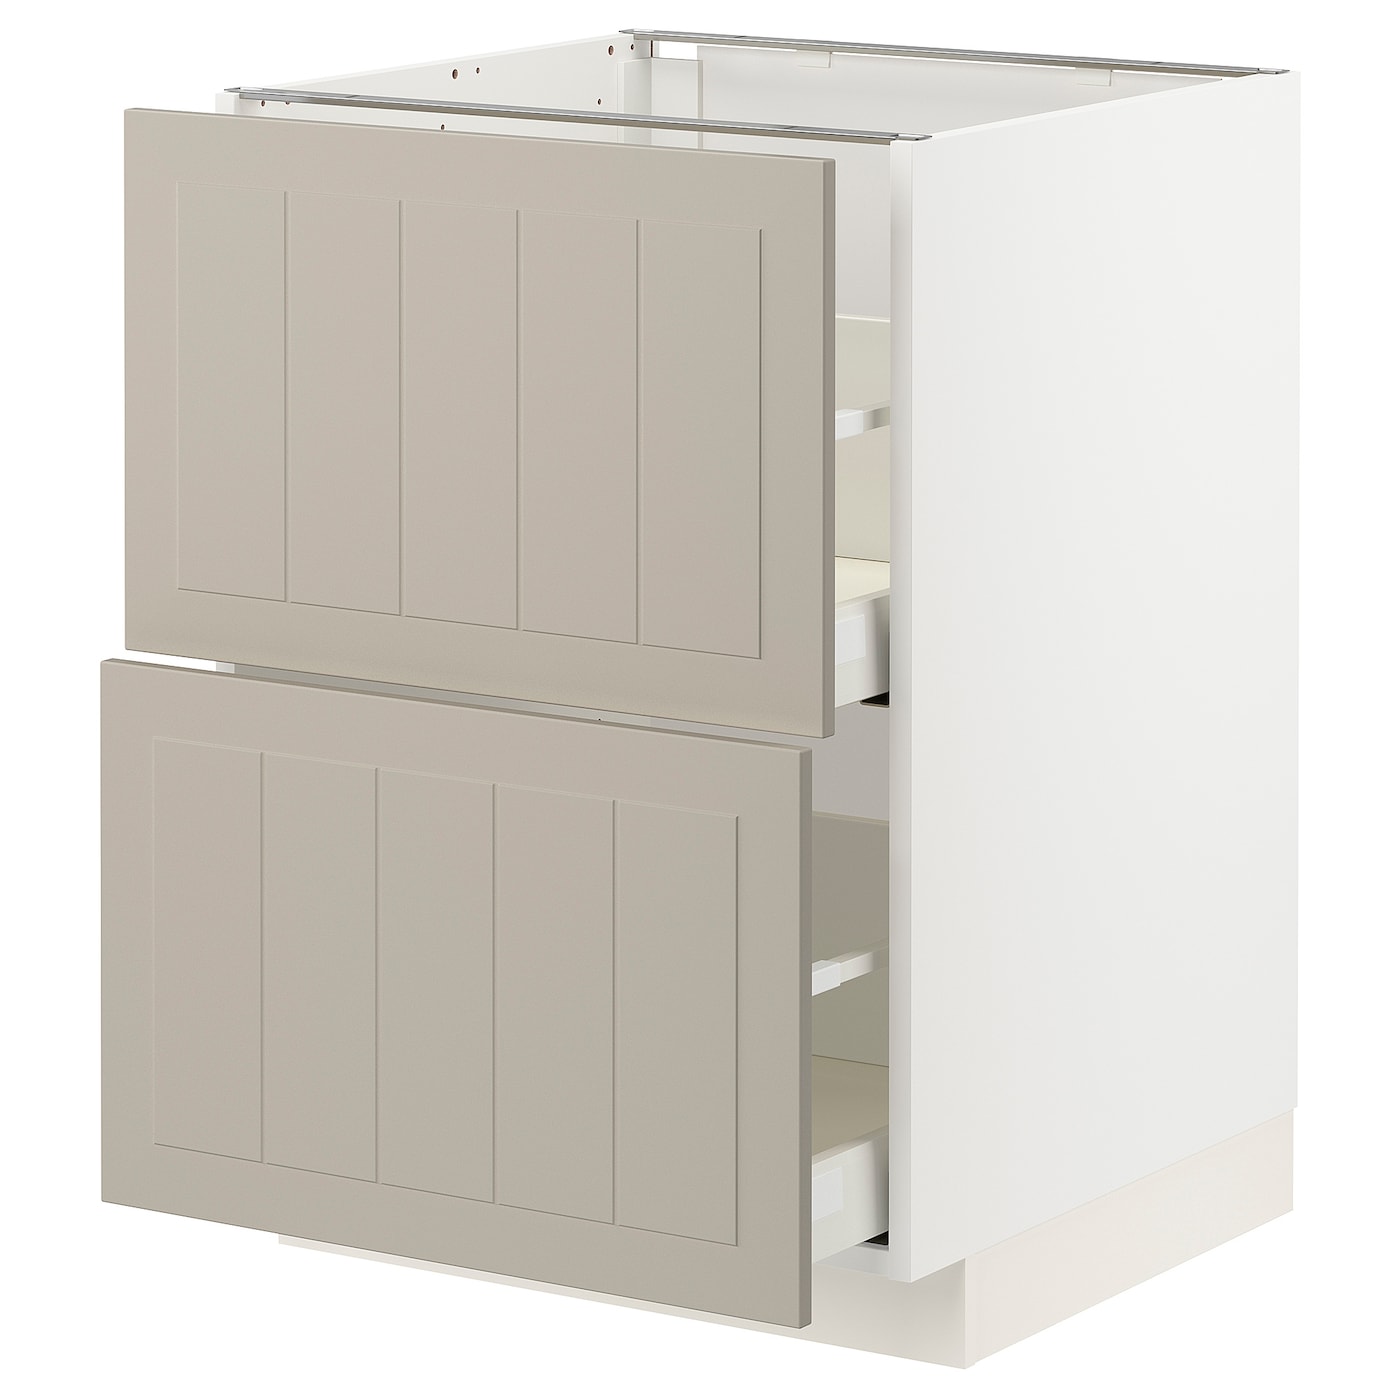 Напольный кухонный шкаф  - IKEA METOD MAXIMERA, 88x62x60см, белый/темно-бежевый, МЕТОД МАКСИМЕРА ИКЕА